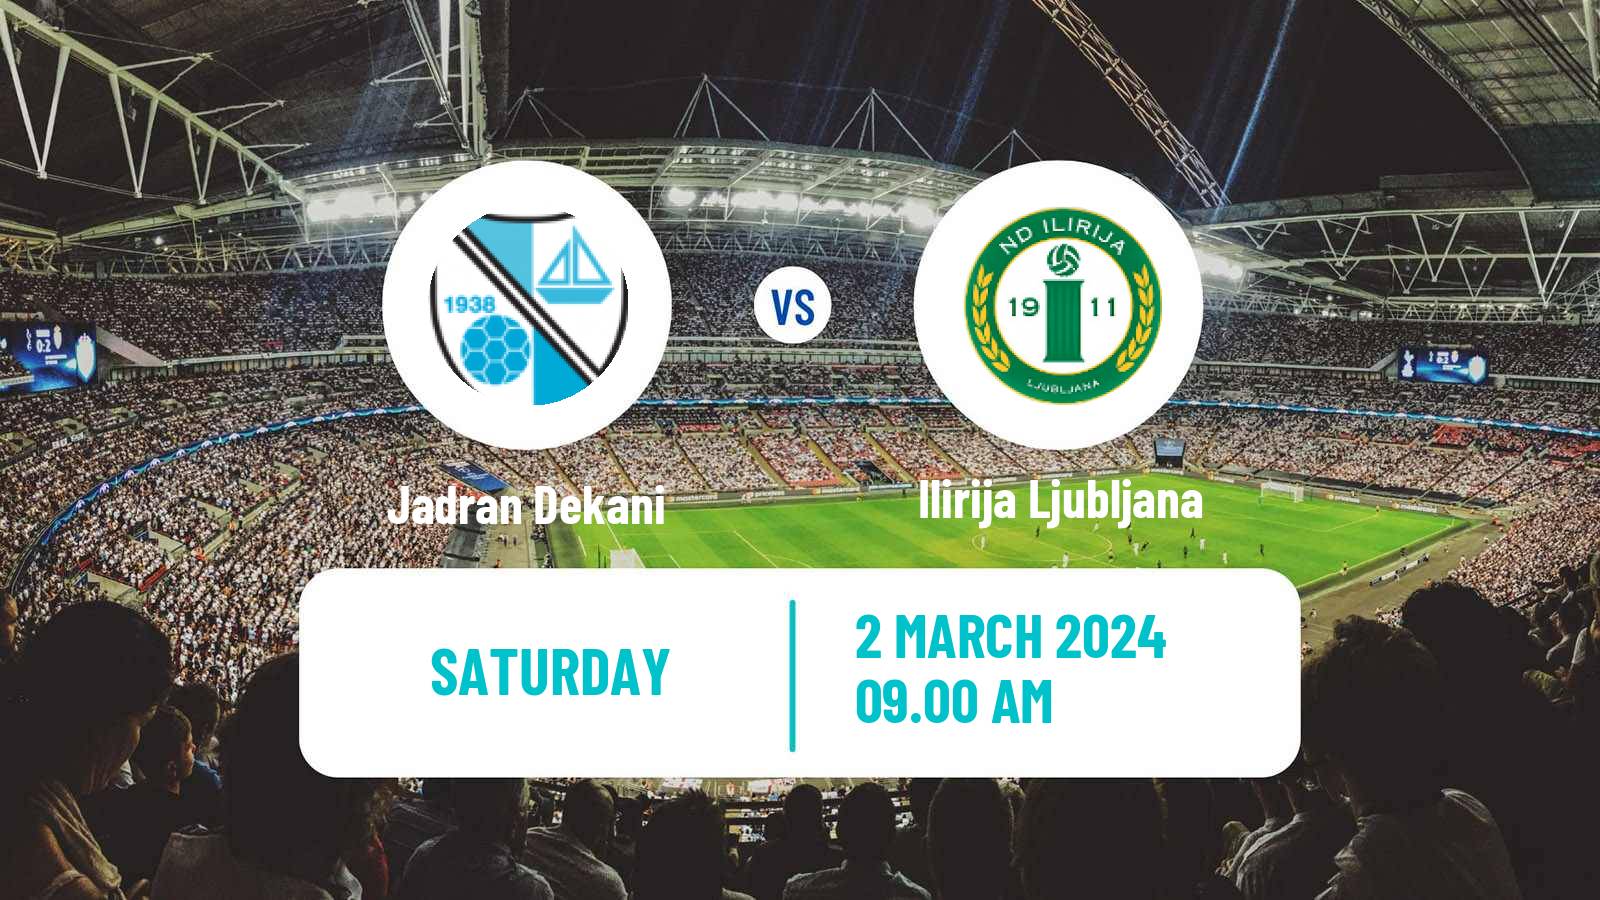 Soccer Slovenian 2 SNL Jadran Dekani - Ilirija Ljubljana